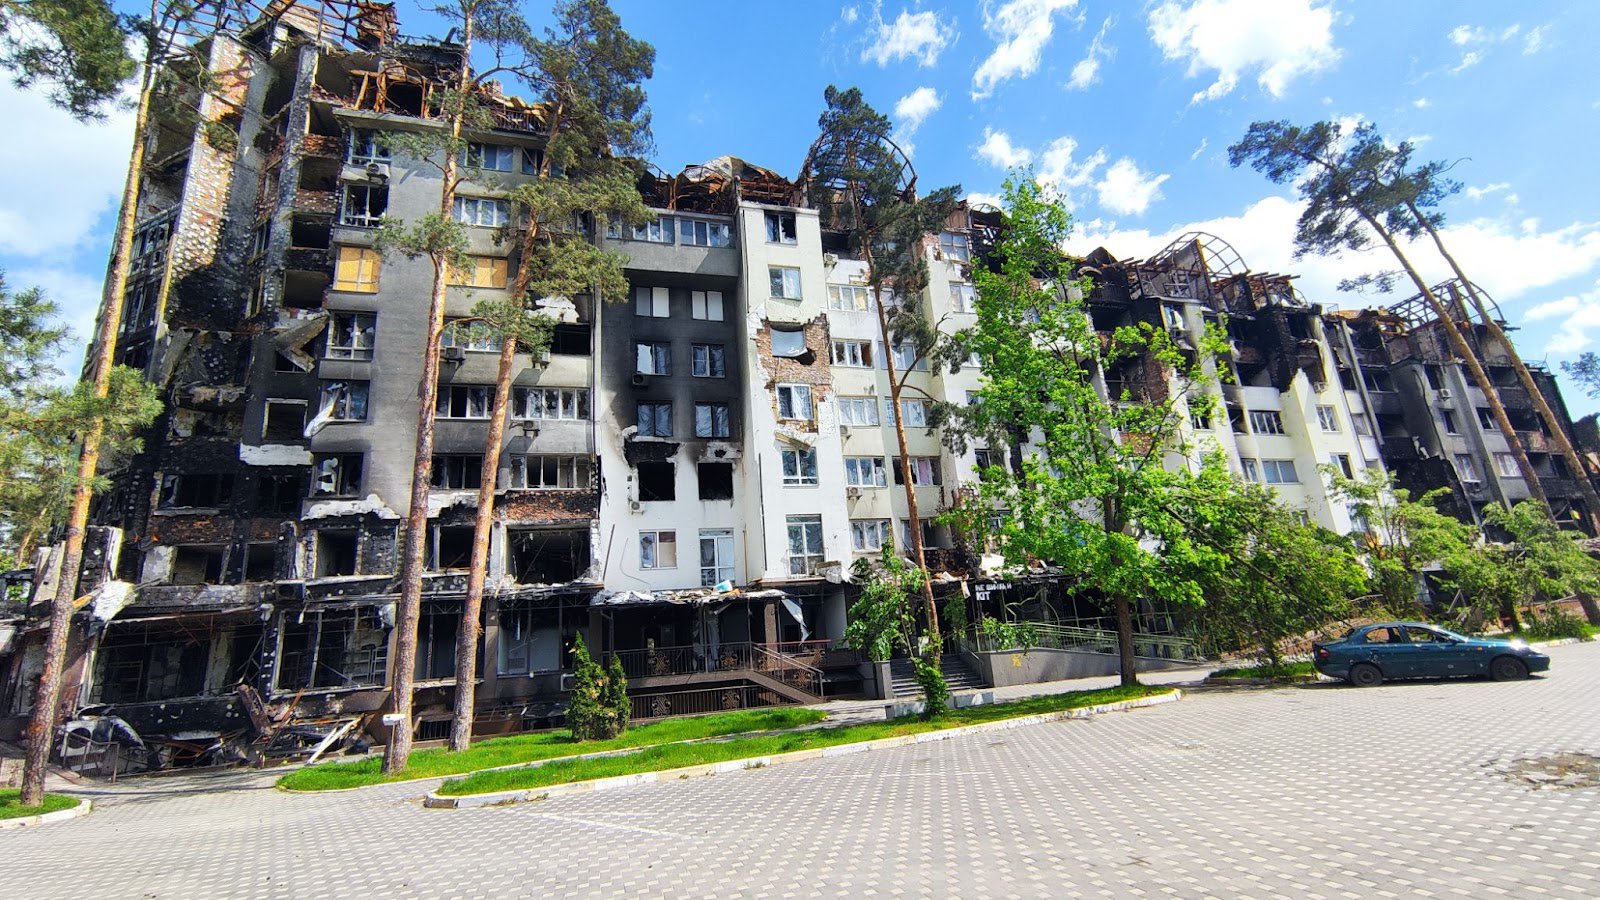 Не всі квартири однаково (як зазначено в Акті про пожежу) постраждали. Частина квартир не вигоріла повністю, а більшість тримальних конструкцій залишилися цілими